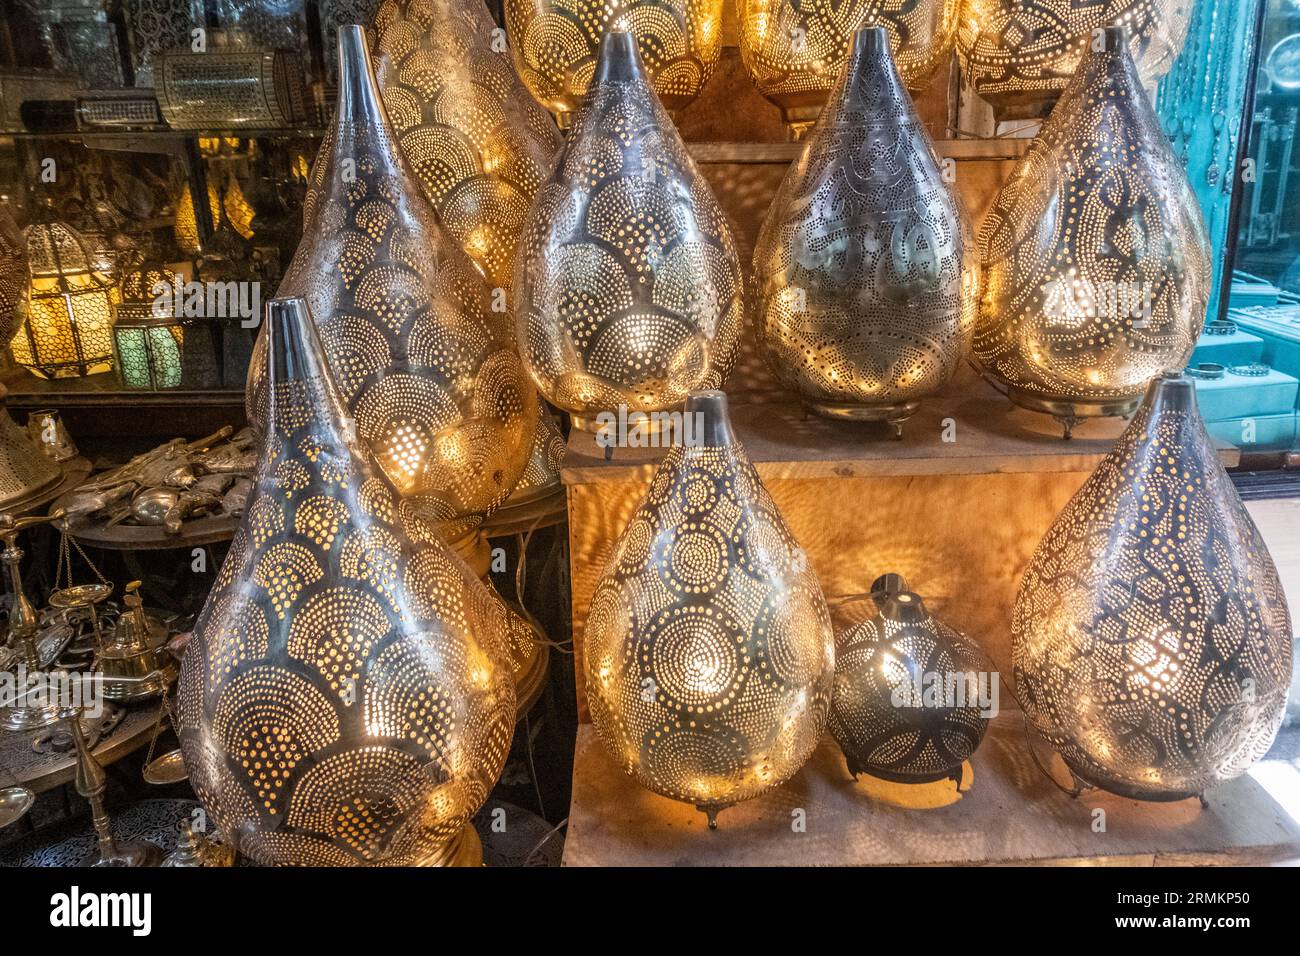 Ägypten Summer Travel Marketplace Magic: Fesselnder Souk im Herzen von Kairo Stockfoto